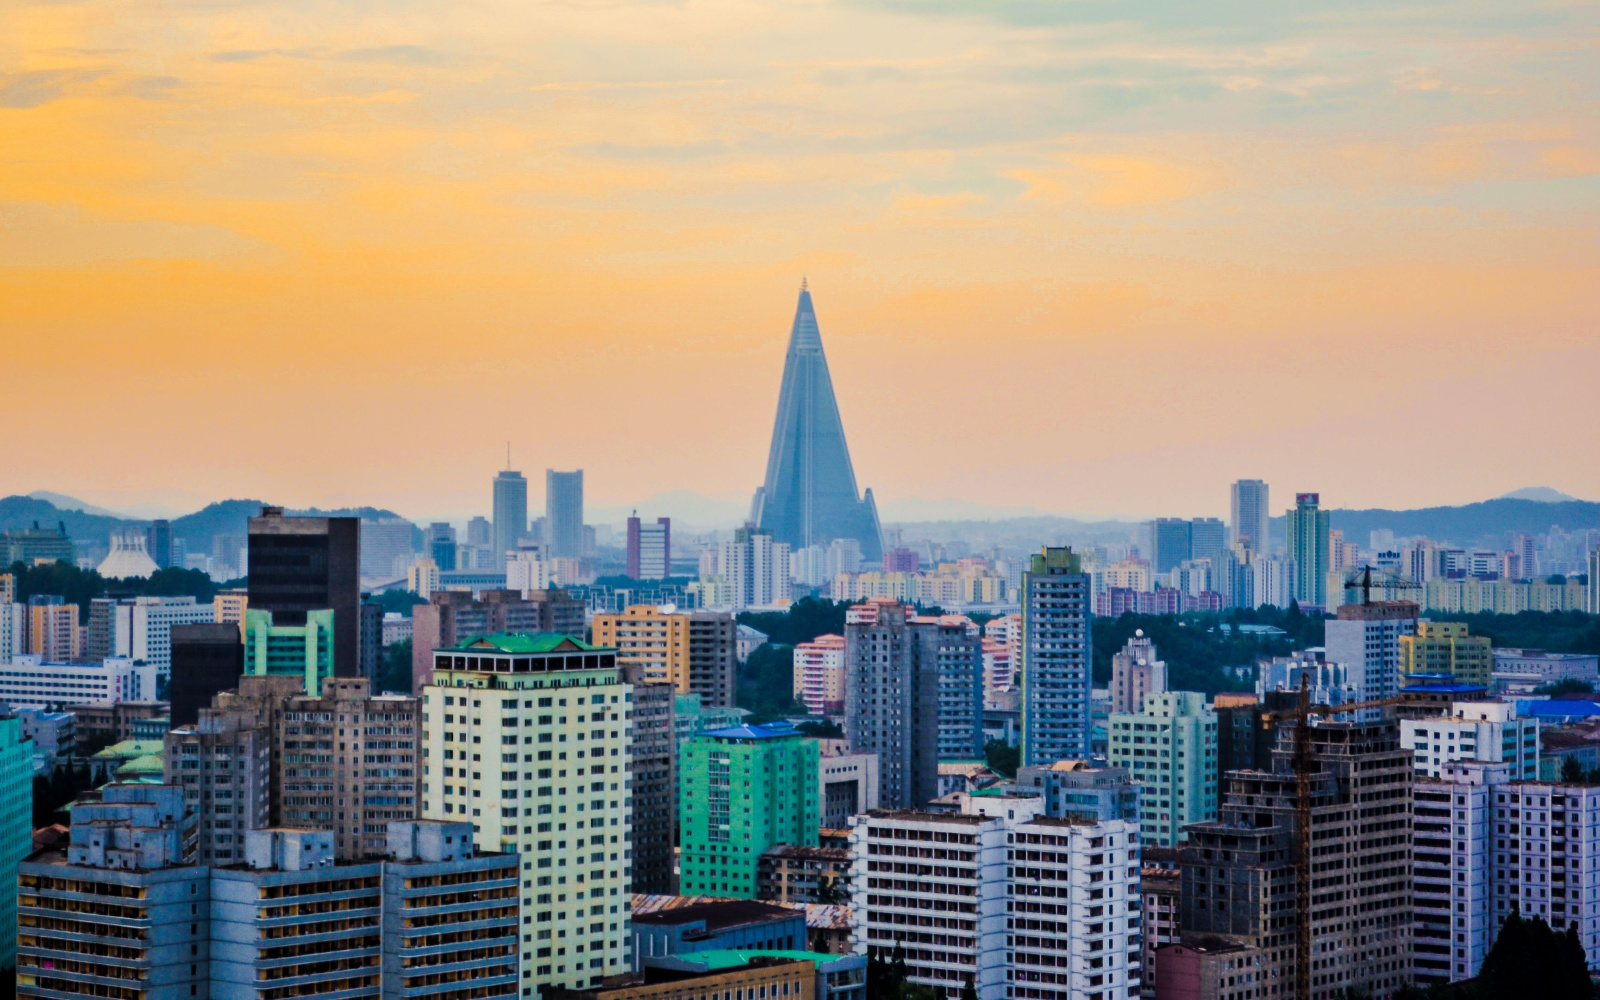 Is North Korea Safe? | Travel Tips & Safety Concerns